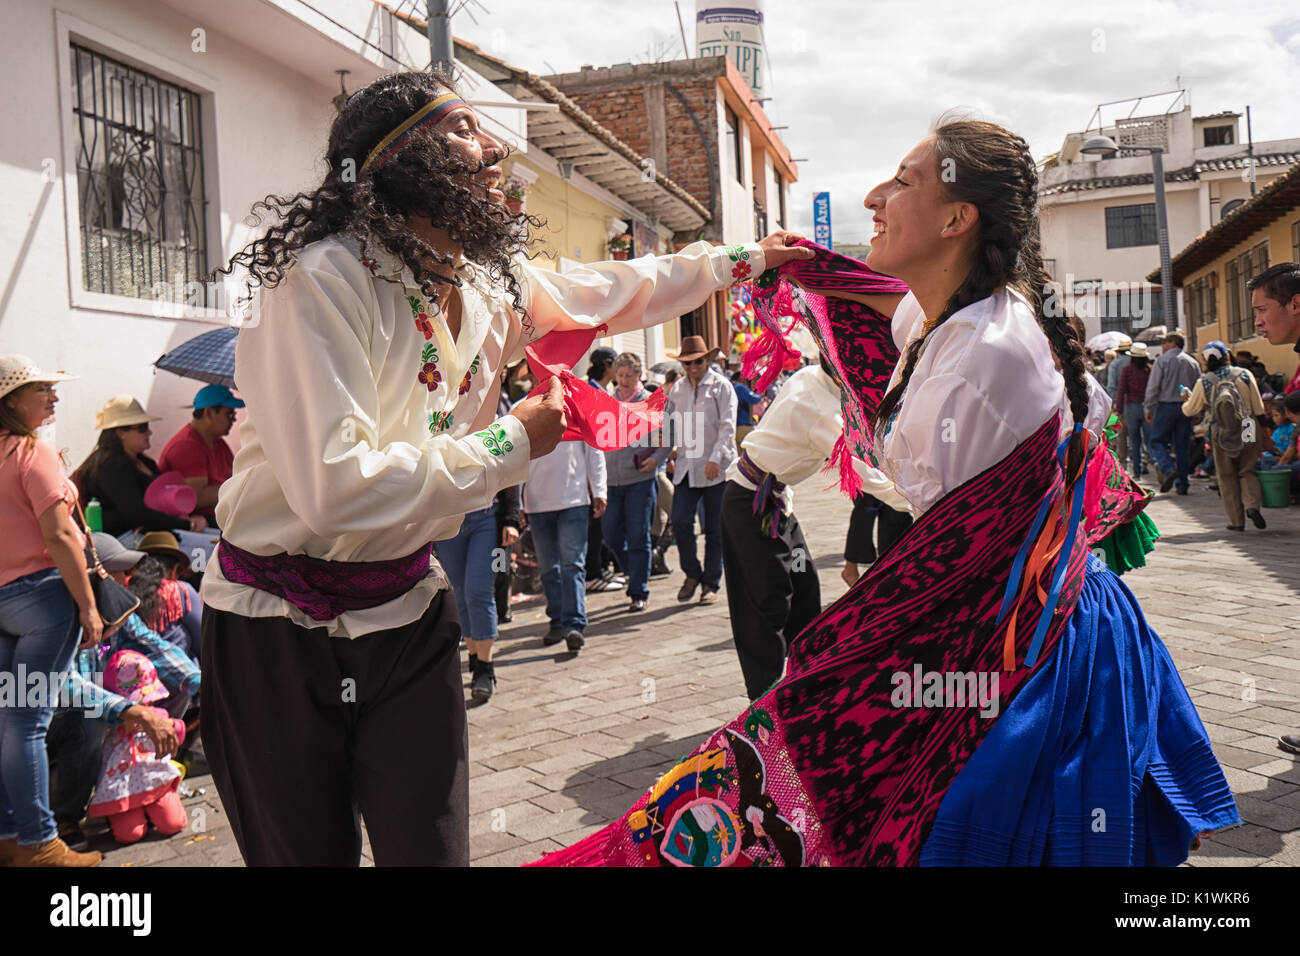 17 juin 2017, l'Équateur Pujili : Street dancers performing en costume traditionnel au cours de Corpus Christi Banque D'Images